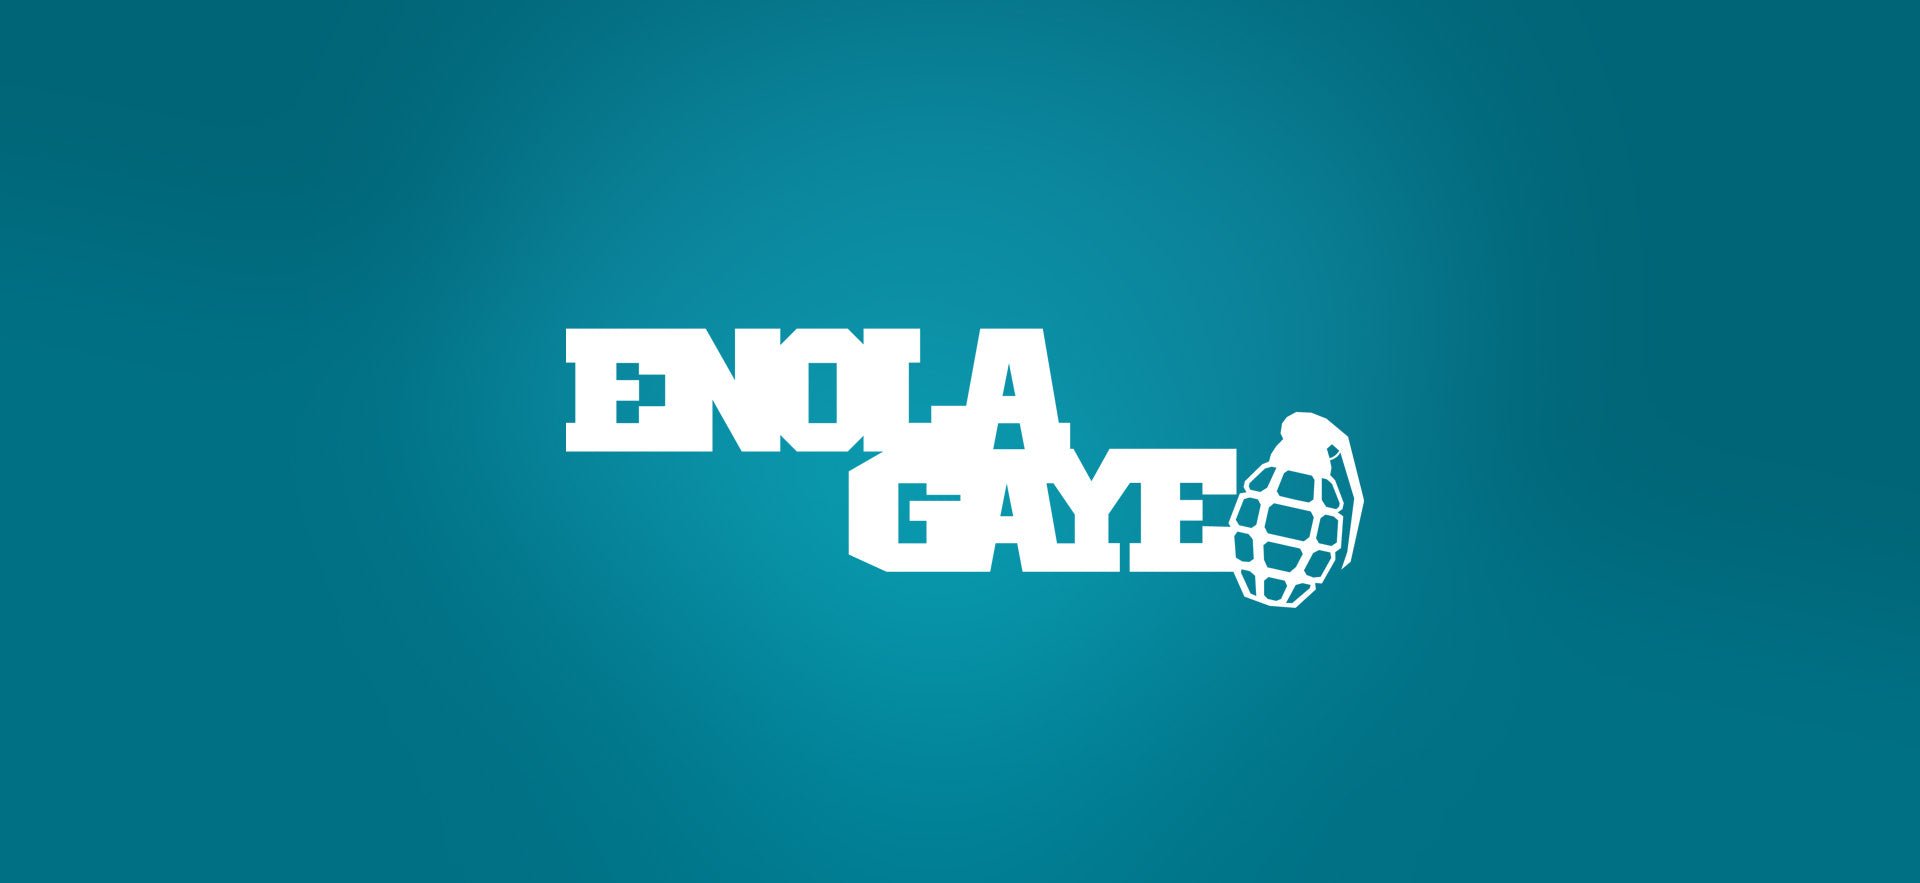 Enola Gaye - Weekend-Warrior.Shop